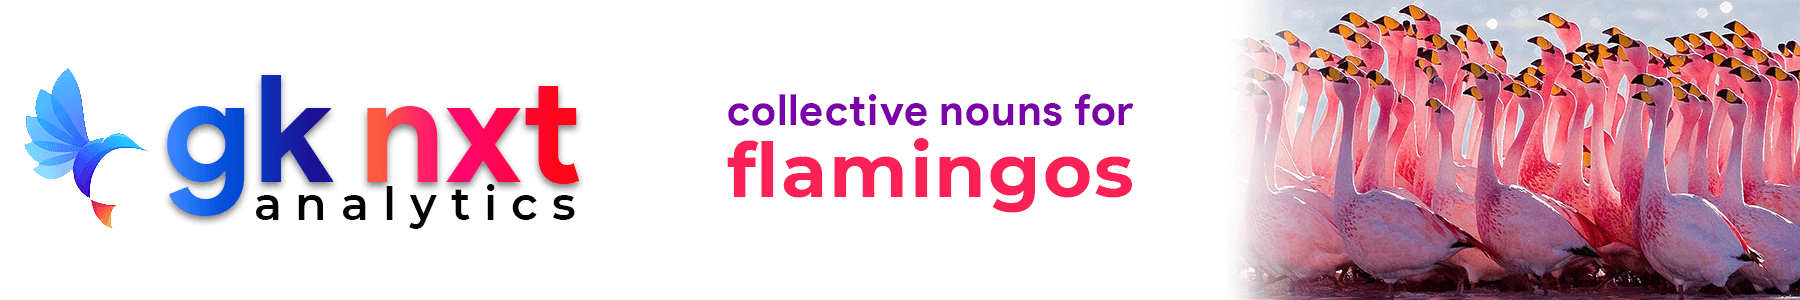 collective nouns for flamingos